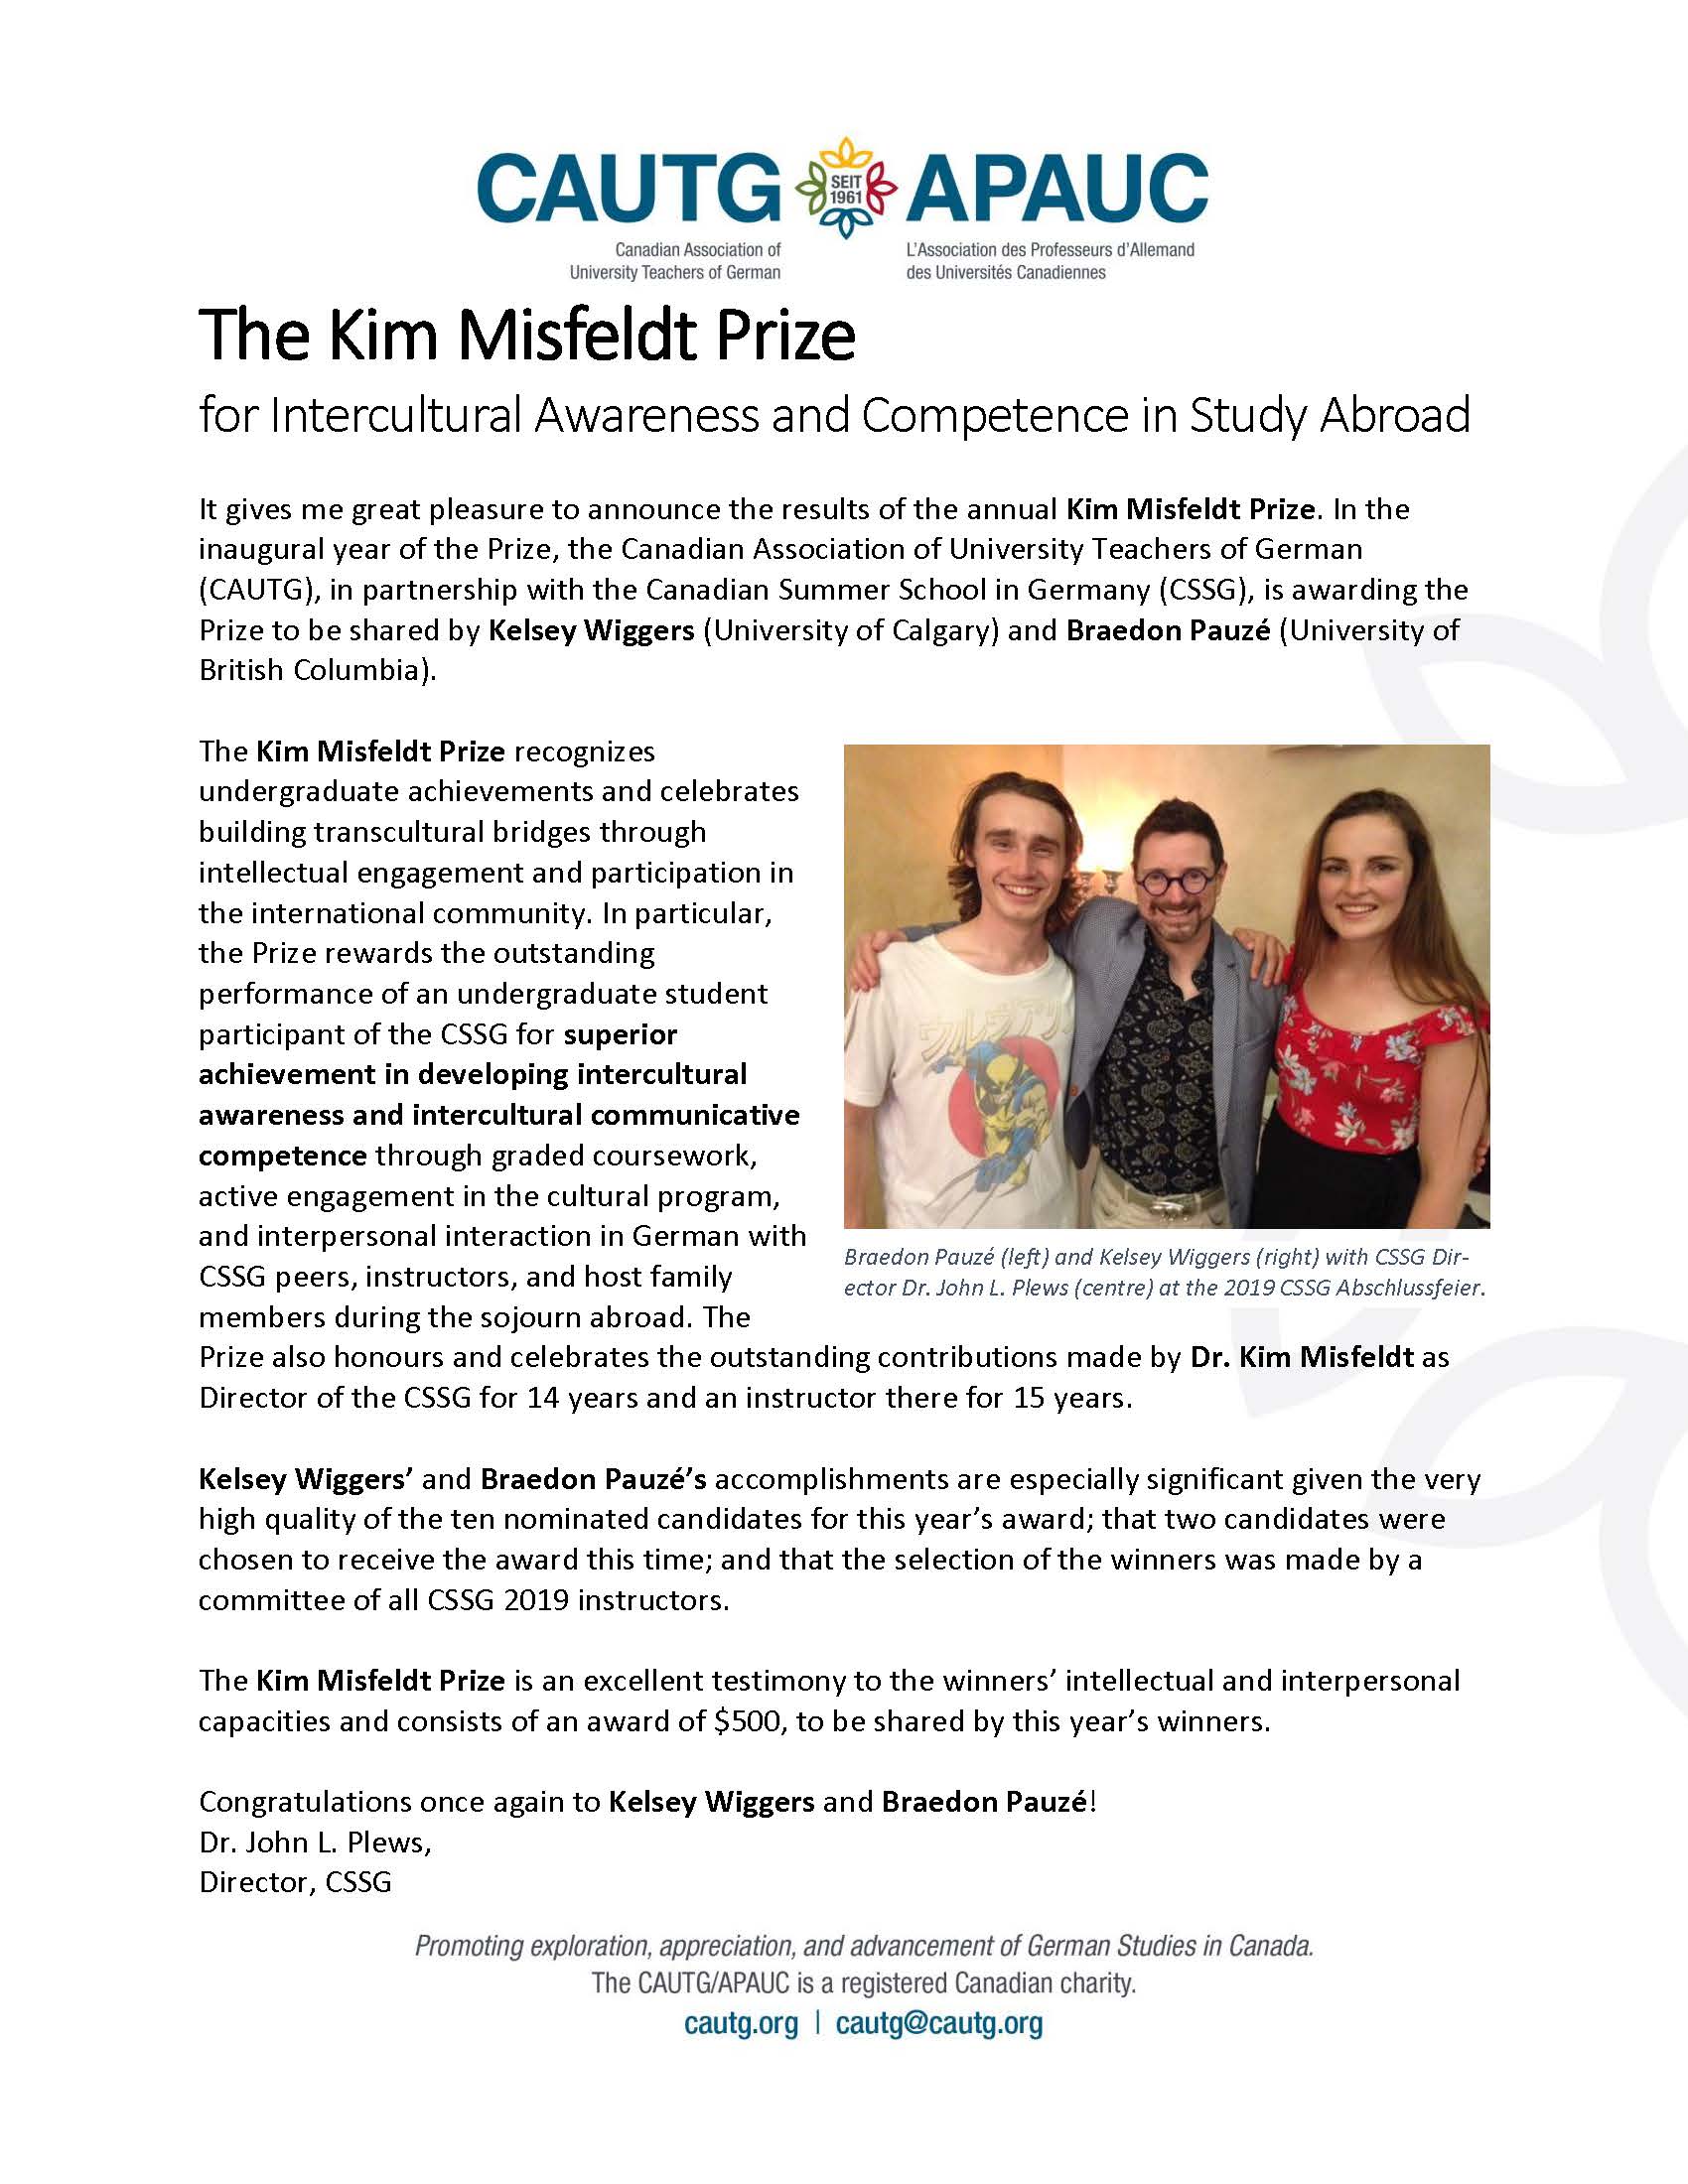 Kim Misfeldt Prize 2019 winners